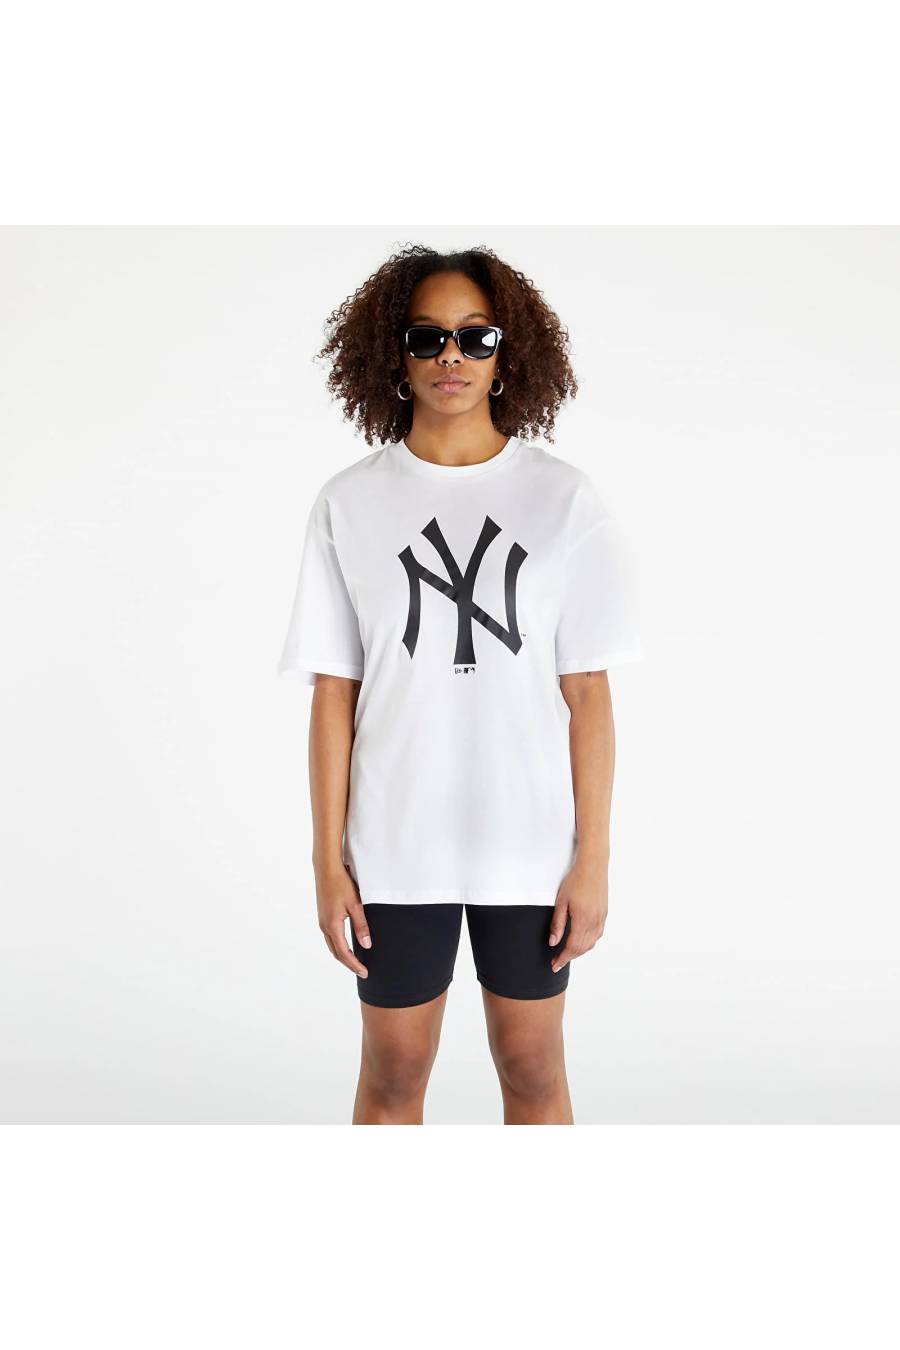 Camiseta New Era New York Yankees MLB League Oversized 60332283